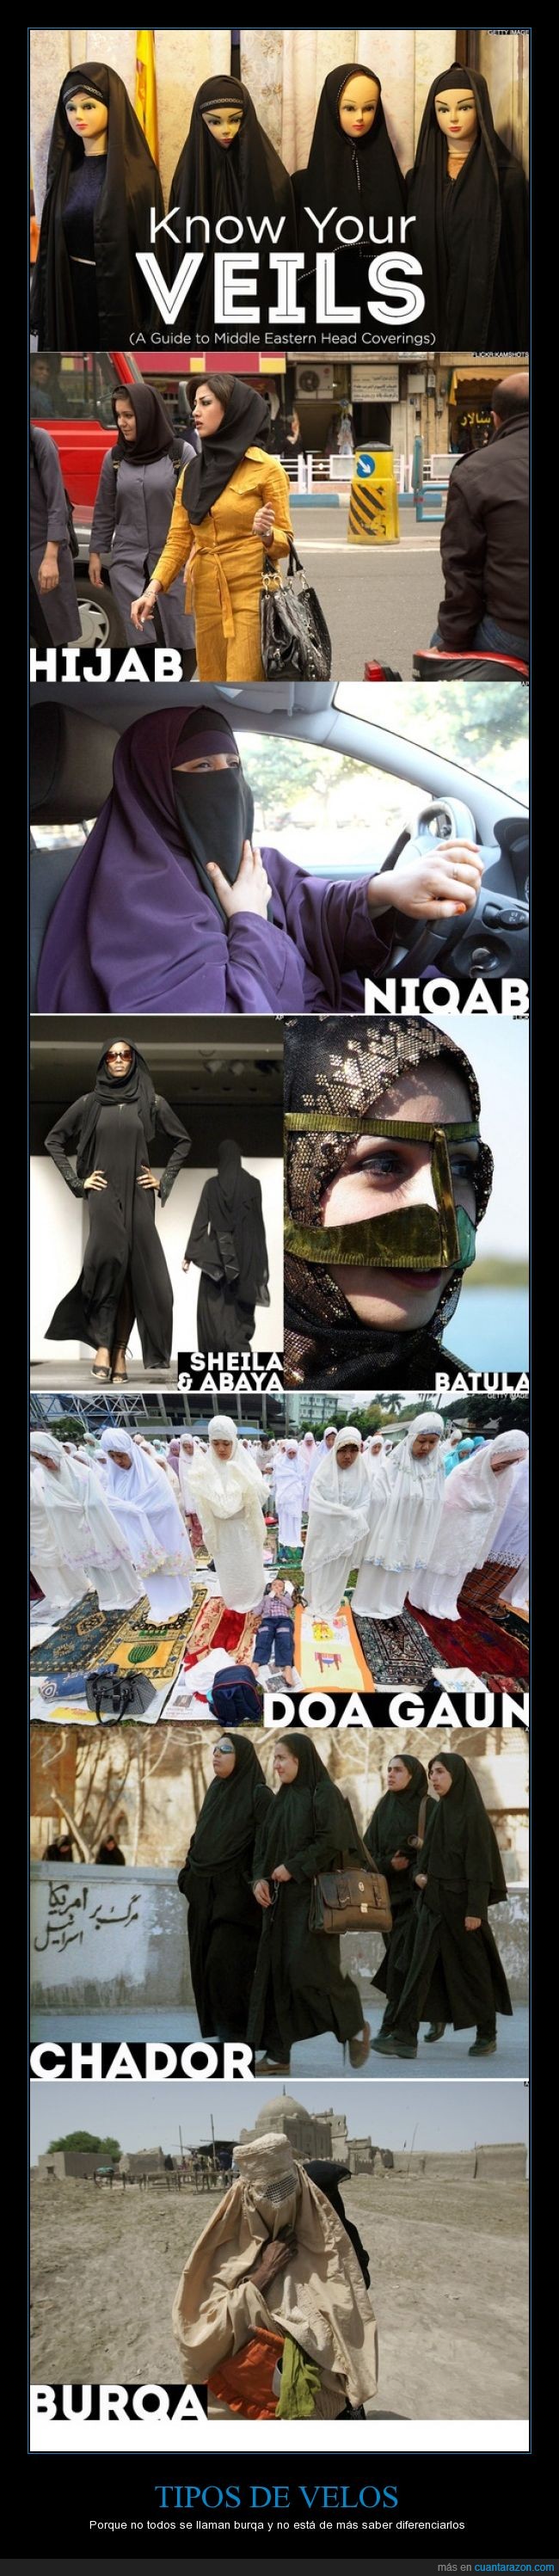 mujer,completo,chador,burqa,religion,hijab,chicas,Velos,medio oriente,musulman,arabe